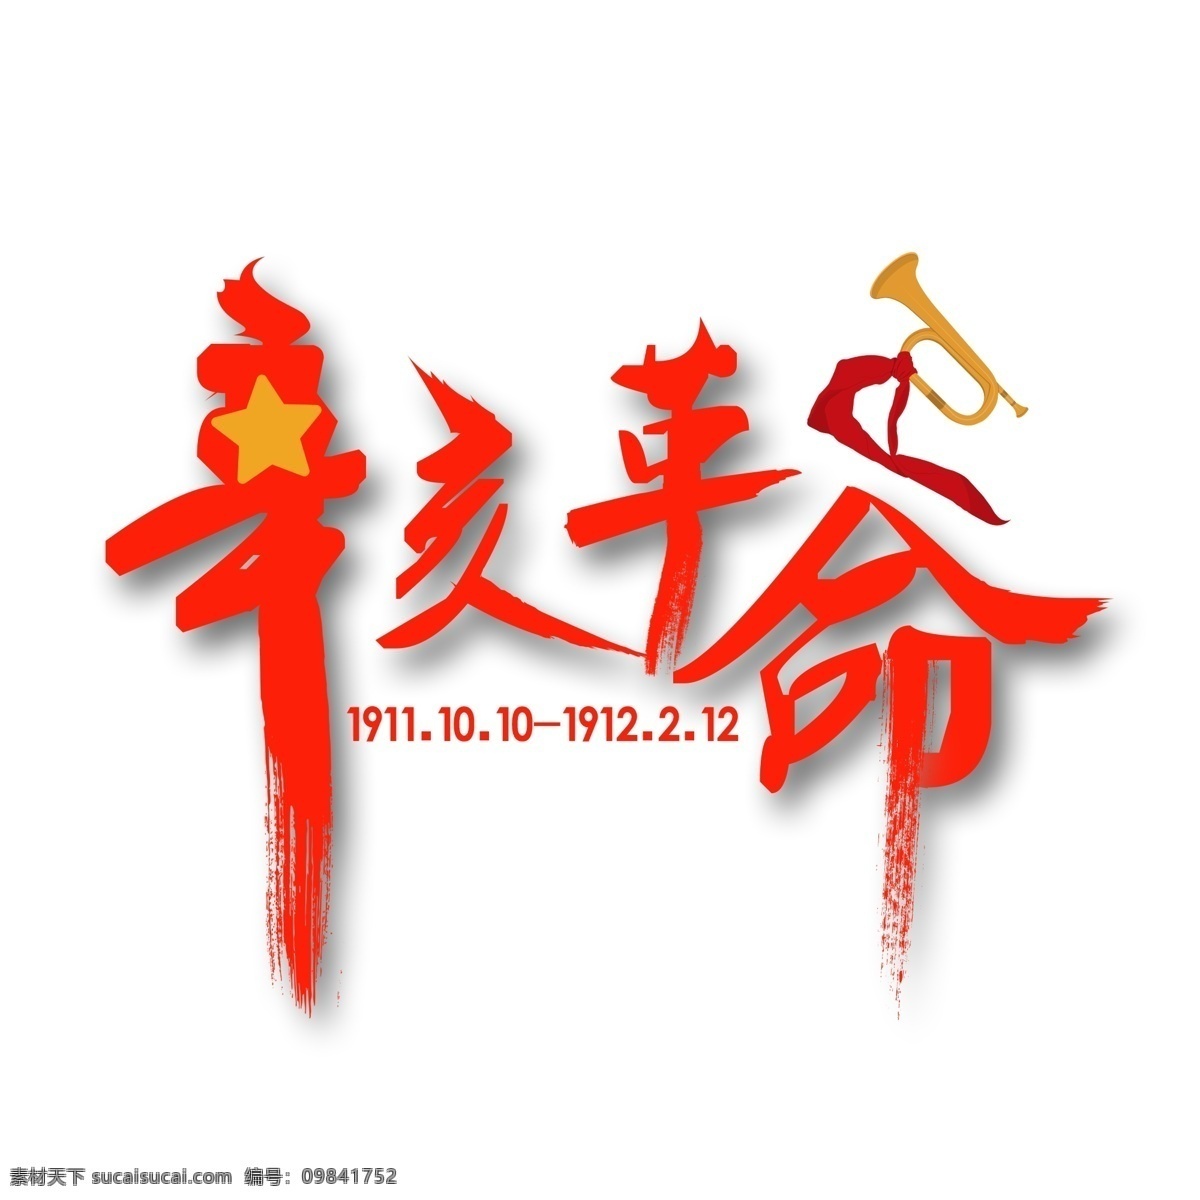 辛亥革命 红色 毛笔字 毛笔 纪念 历史 革命运动 武昌起义